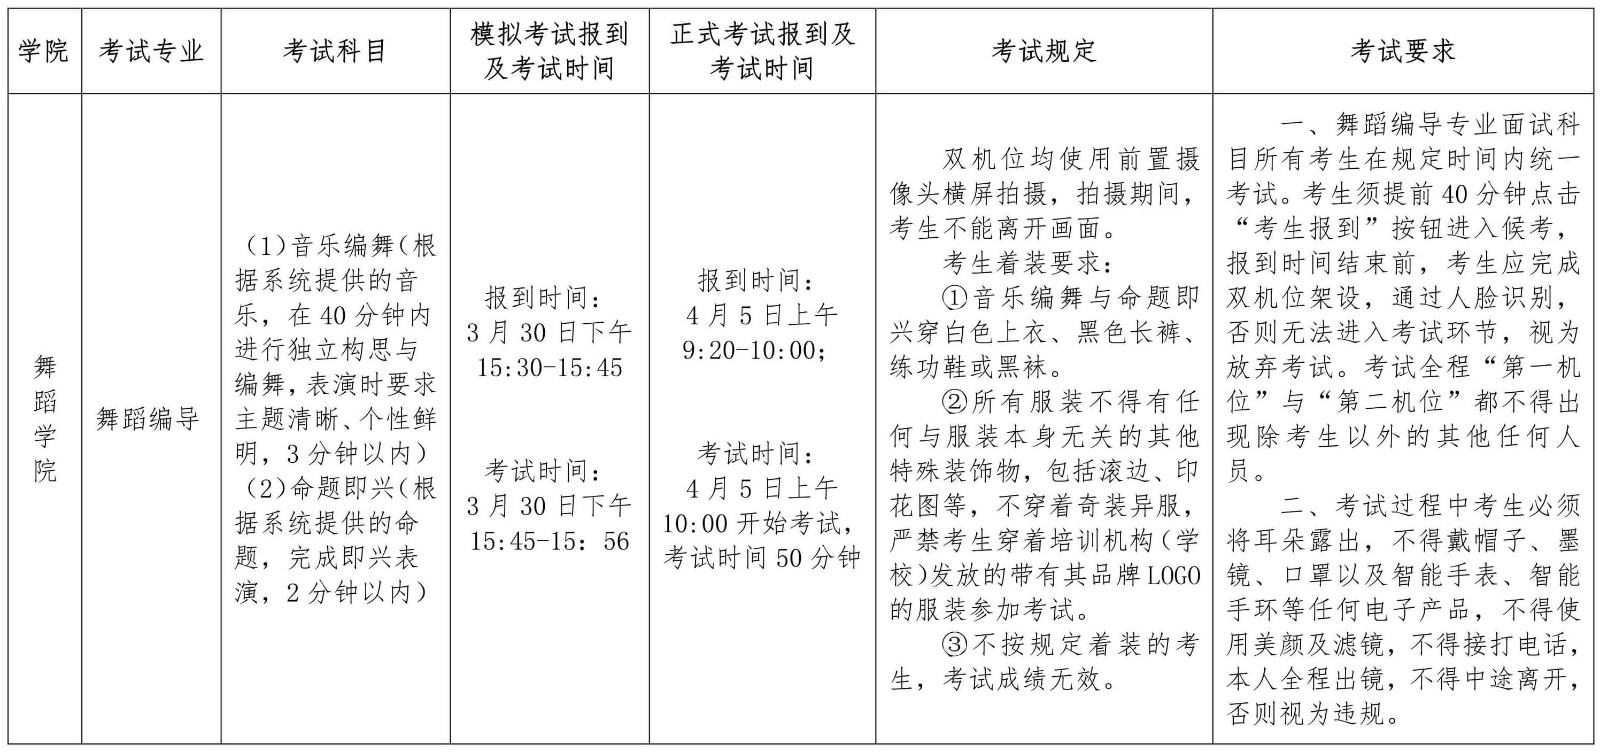 2022年南京藝術學院藝術類本科招生第二階段（復試和只有一次性考試）專業考試舞蹈編導專業及音樂類專業視唱科目考試須知、正式考試報到及考試時間、考試規定、考試要求